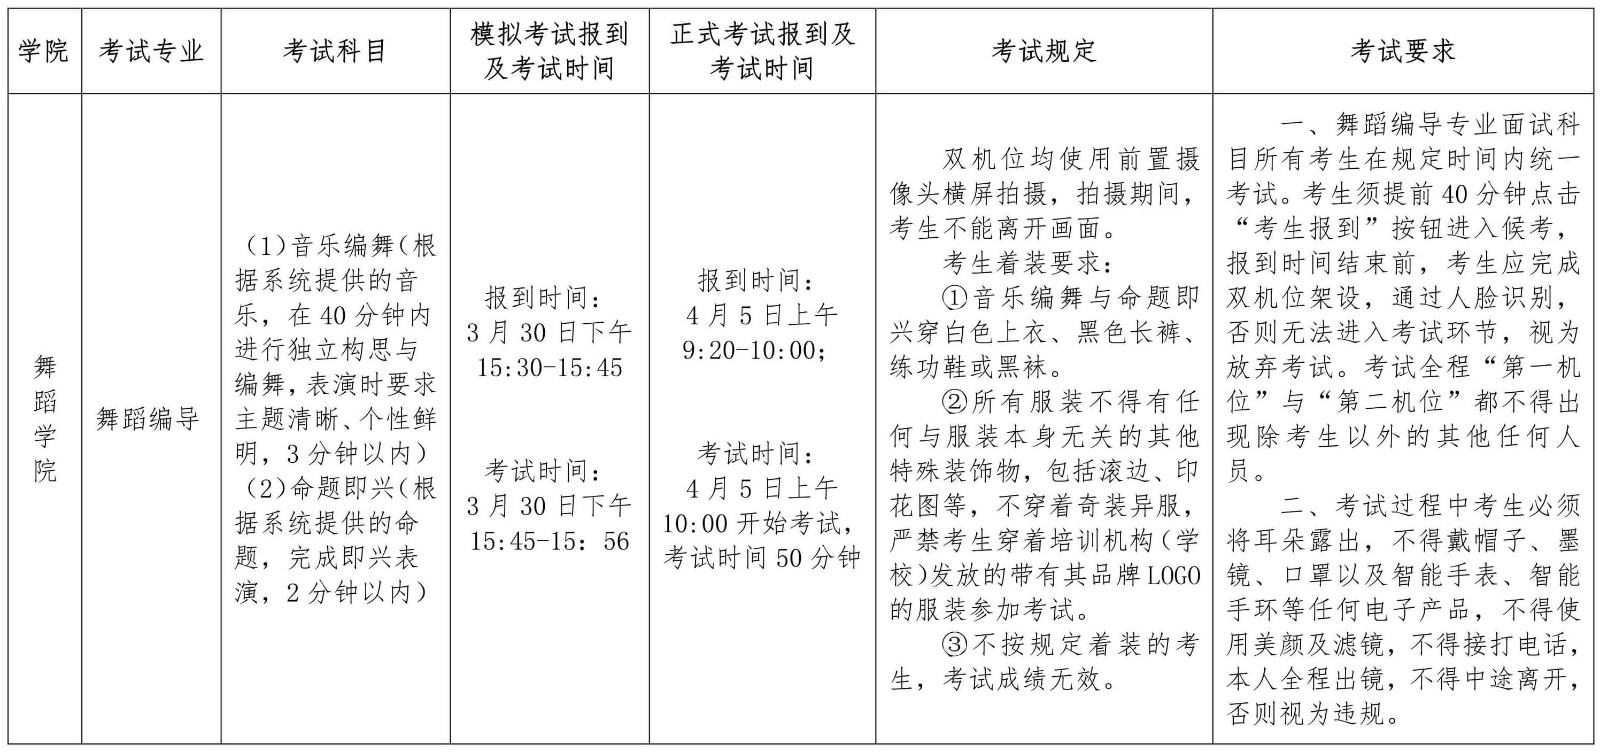 2022年南京藝術學院藝術類本科招生第二階段（復試和只有一次性考試）專業考試舞蹈編導專業及音樂類專業視唱科目考試須知、正式考試報到及考試時間、考試規定、考試要求